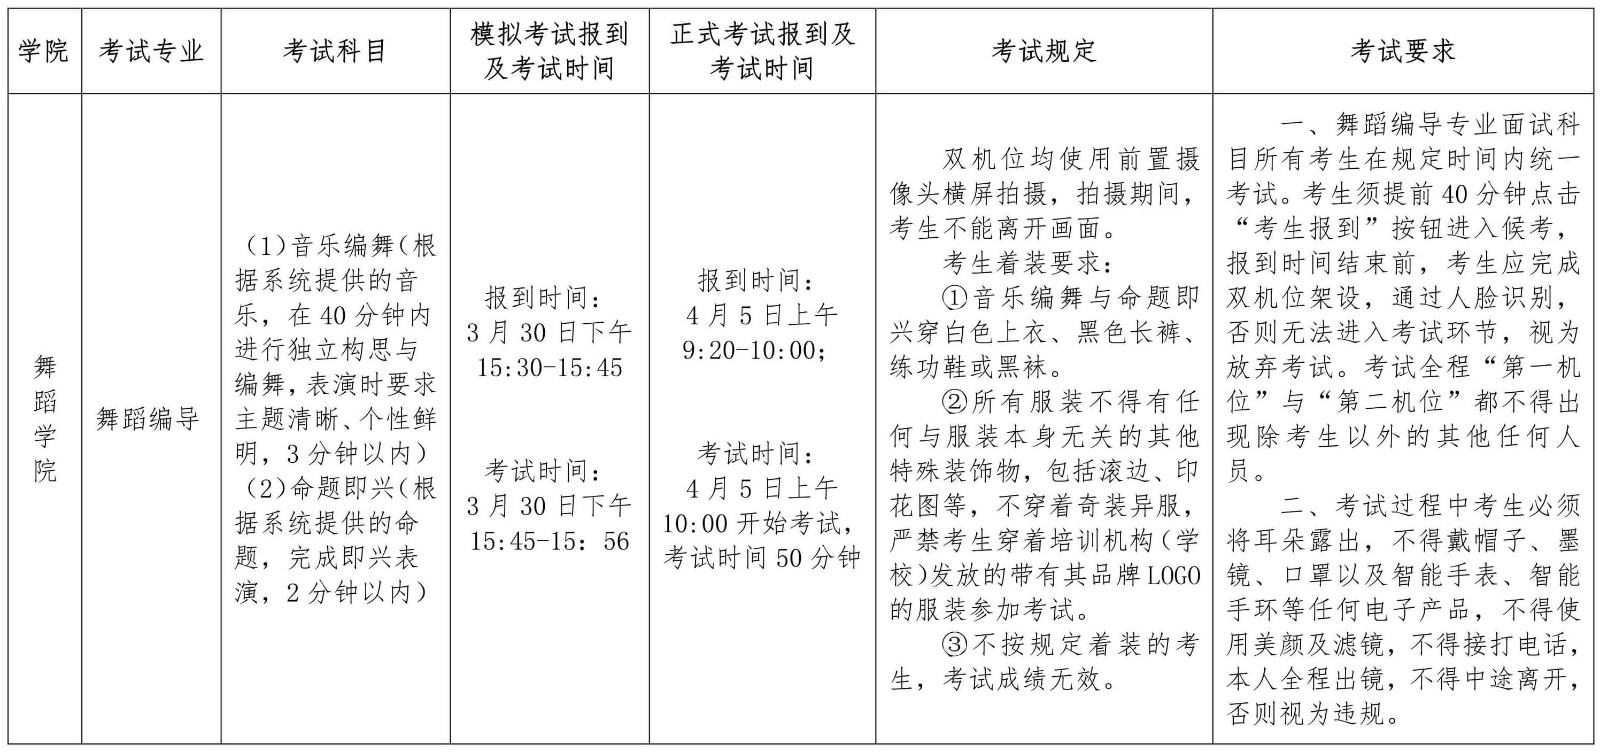 2022年南京藝術學院藝術類本科招生第二階段（復試和只有一次性考試）專業考試舞蹈編導專業及音樂類專業視唱科目考試須知、正式考試報到及考試時間、考試規定、考試要求